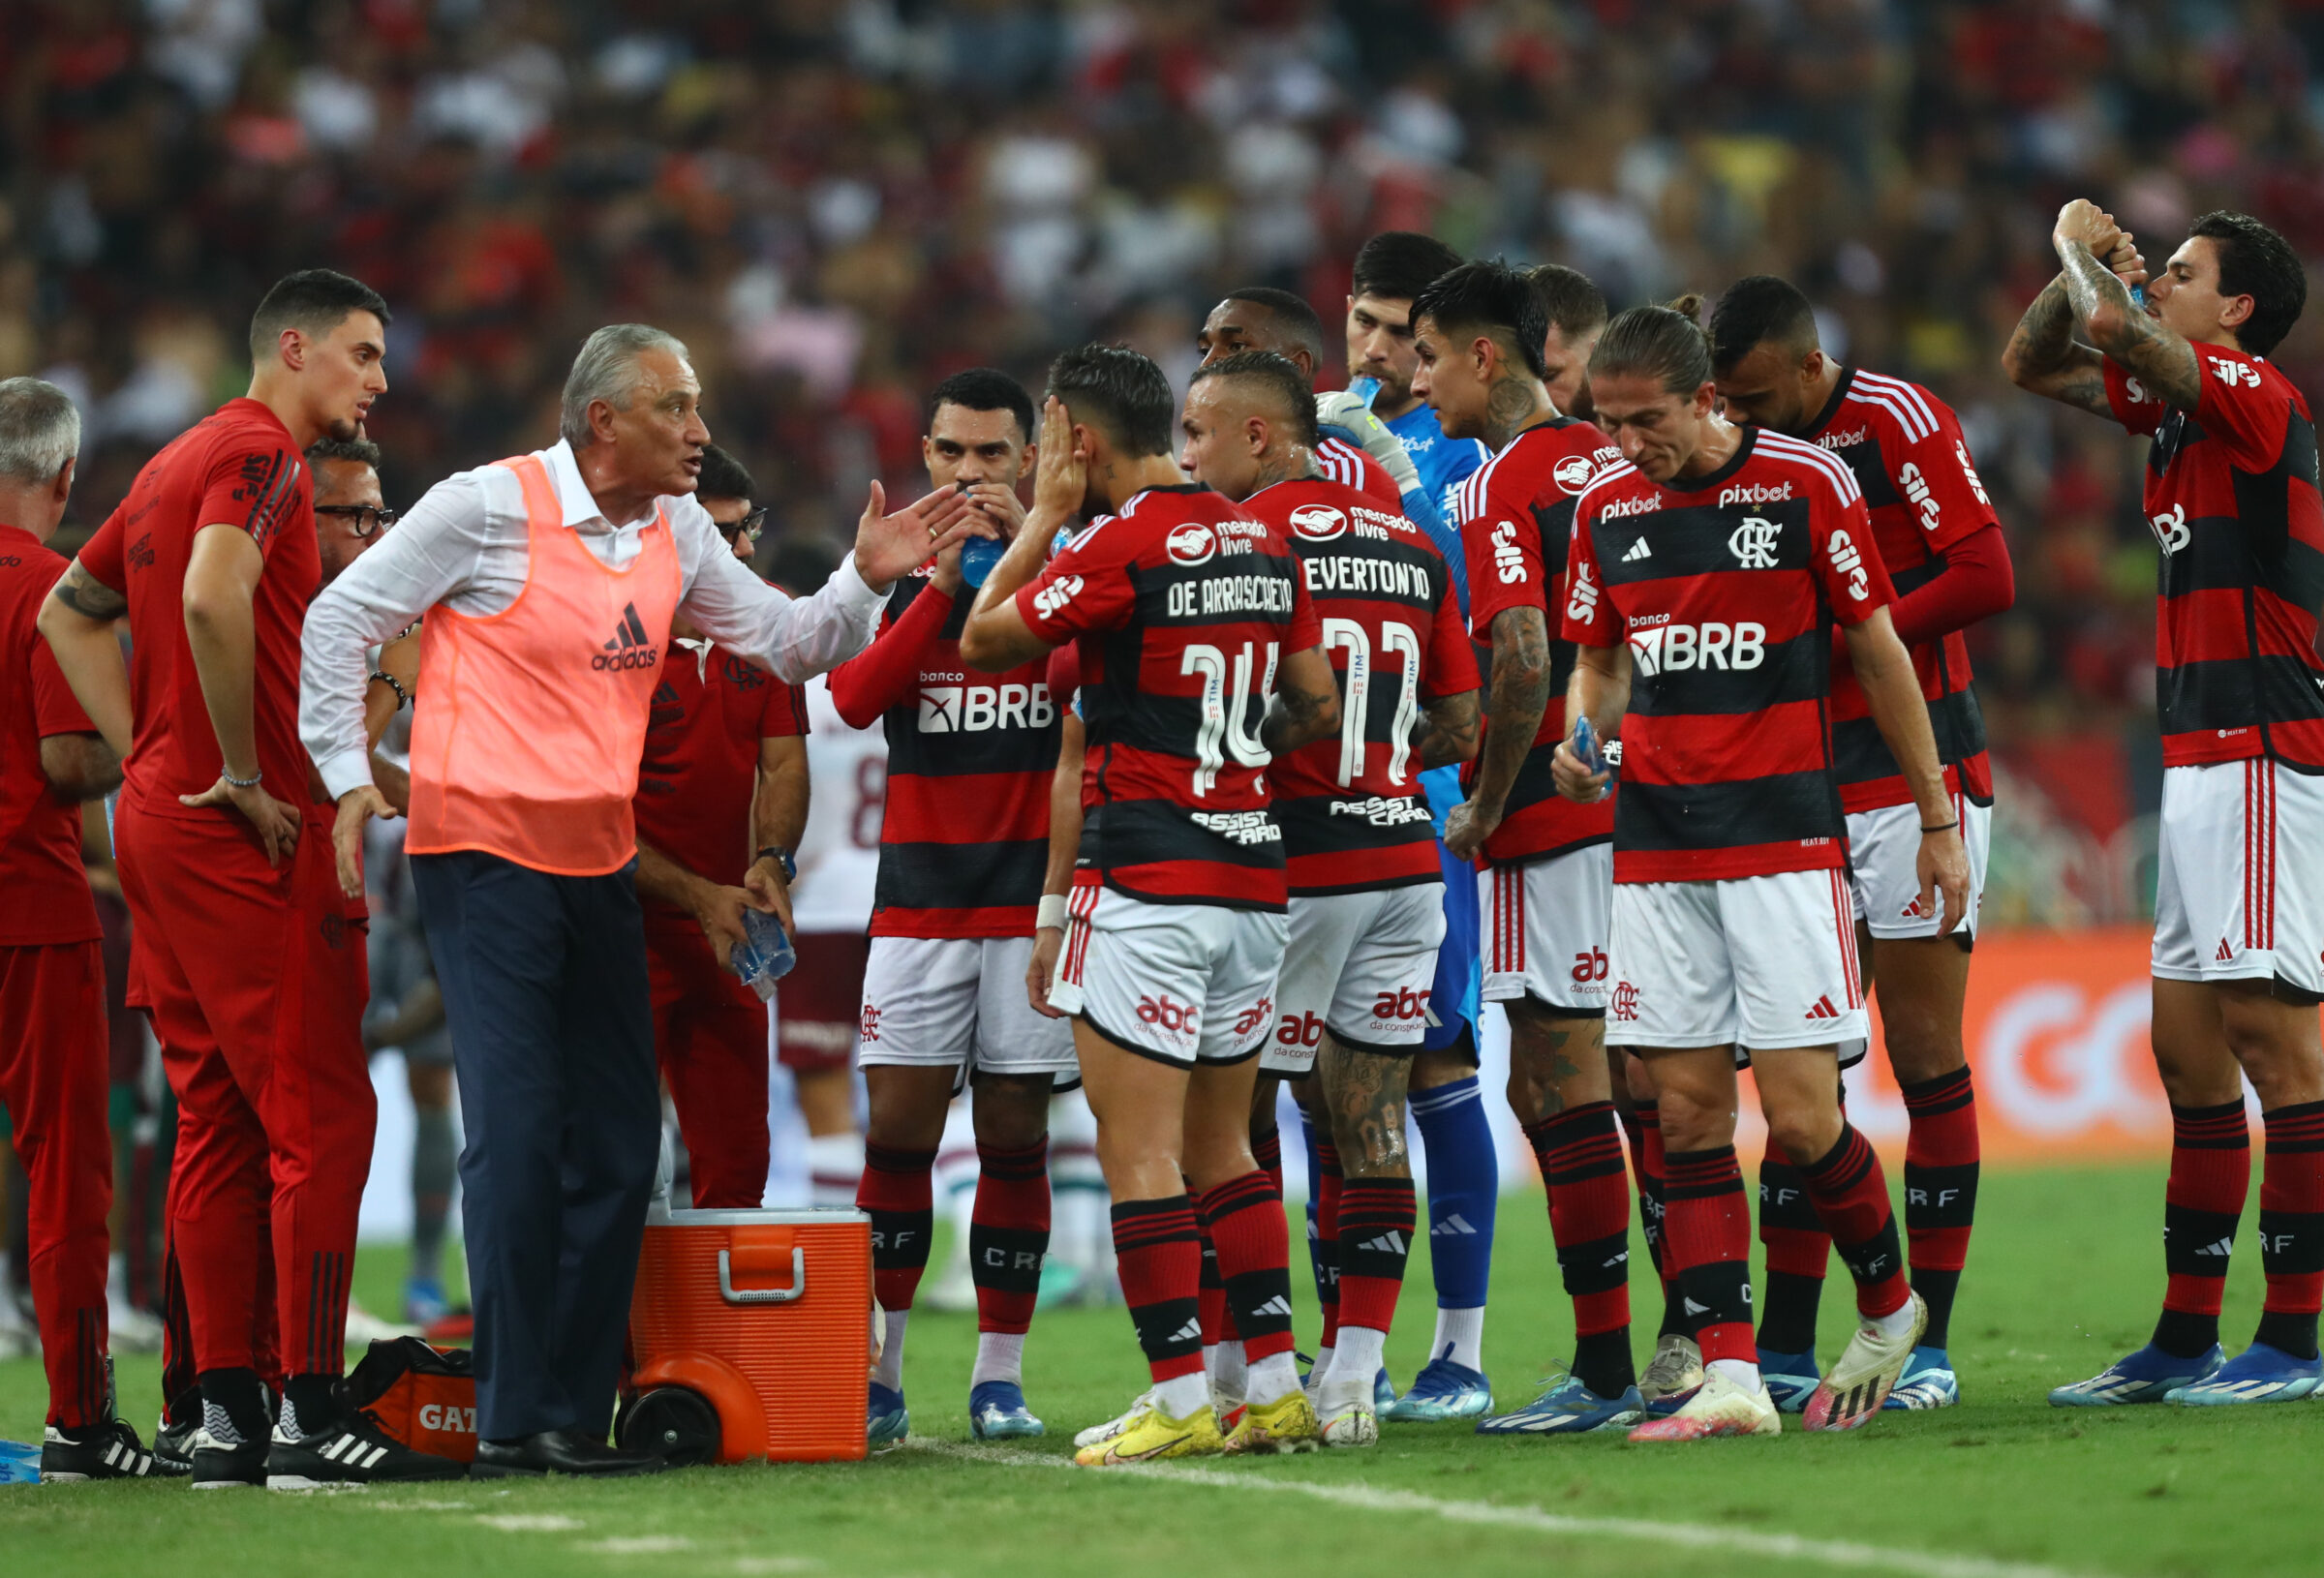 Andreas personifica maratona do Flamengo com presença em todos os jogos  desde que estreou - Flamengo - Extra Online